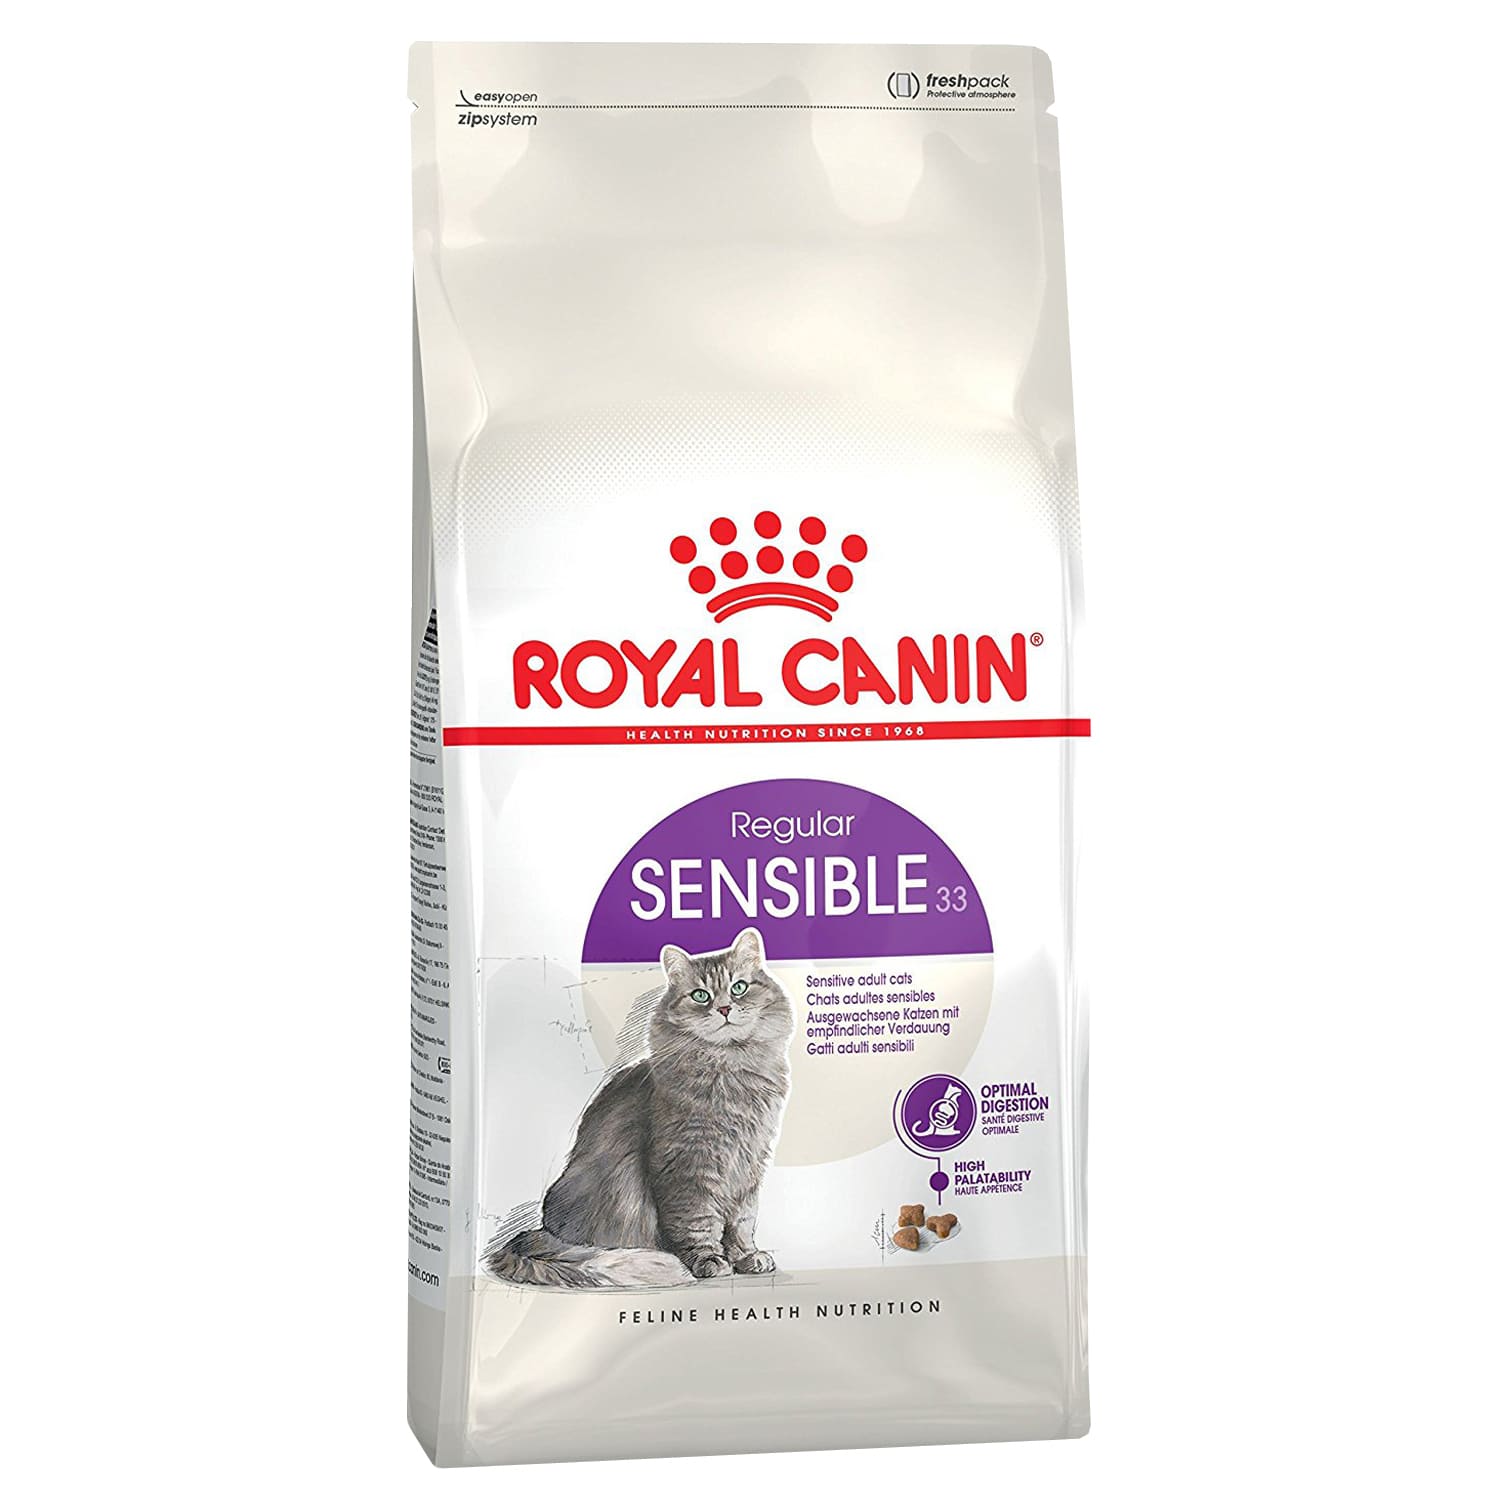 Royal Canin Sensible 33 Корм для кошек с чувствительной пищеварительной системой от зоомагазина Дино Зоо